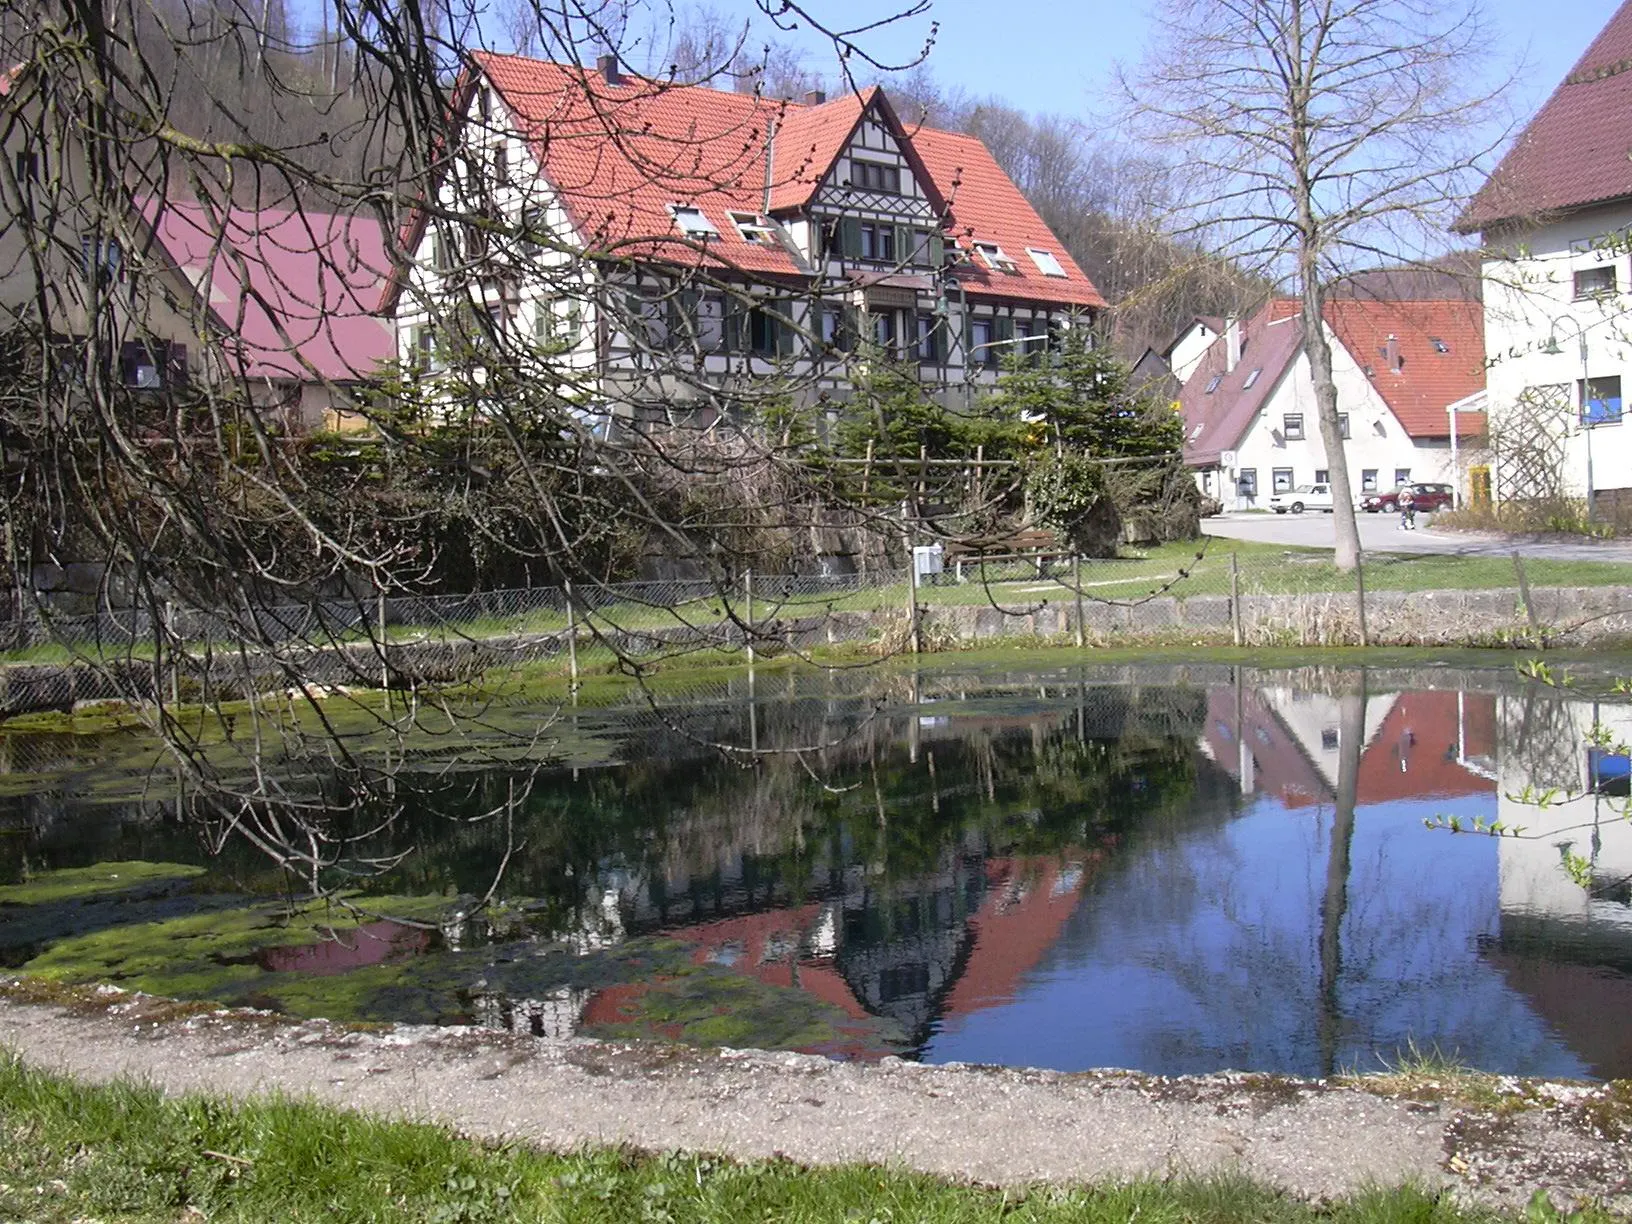 Image de Tübingen